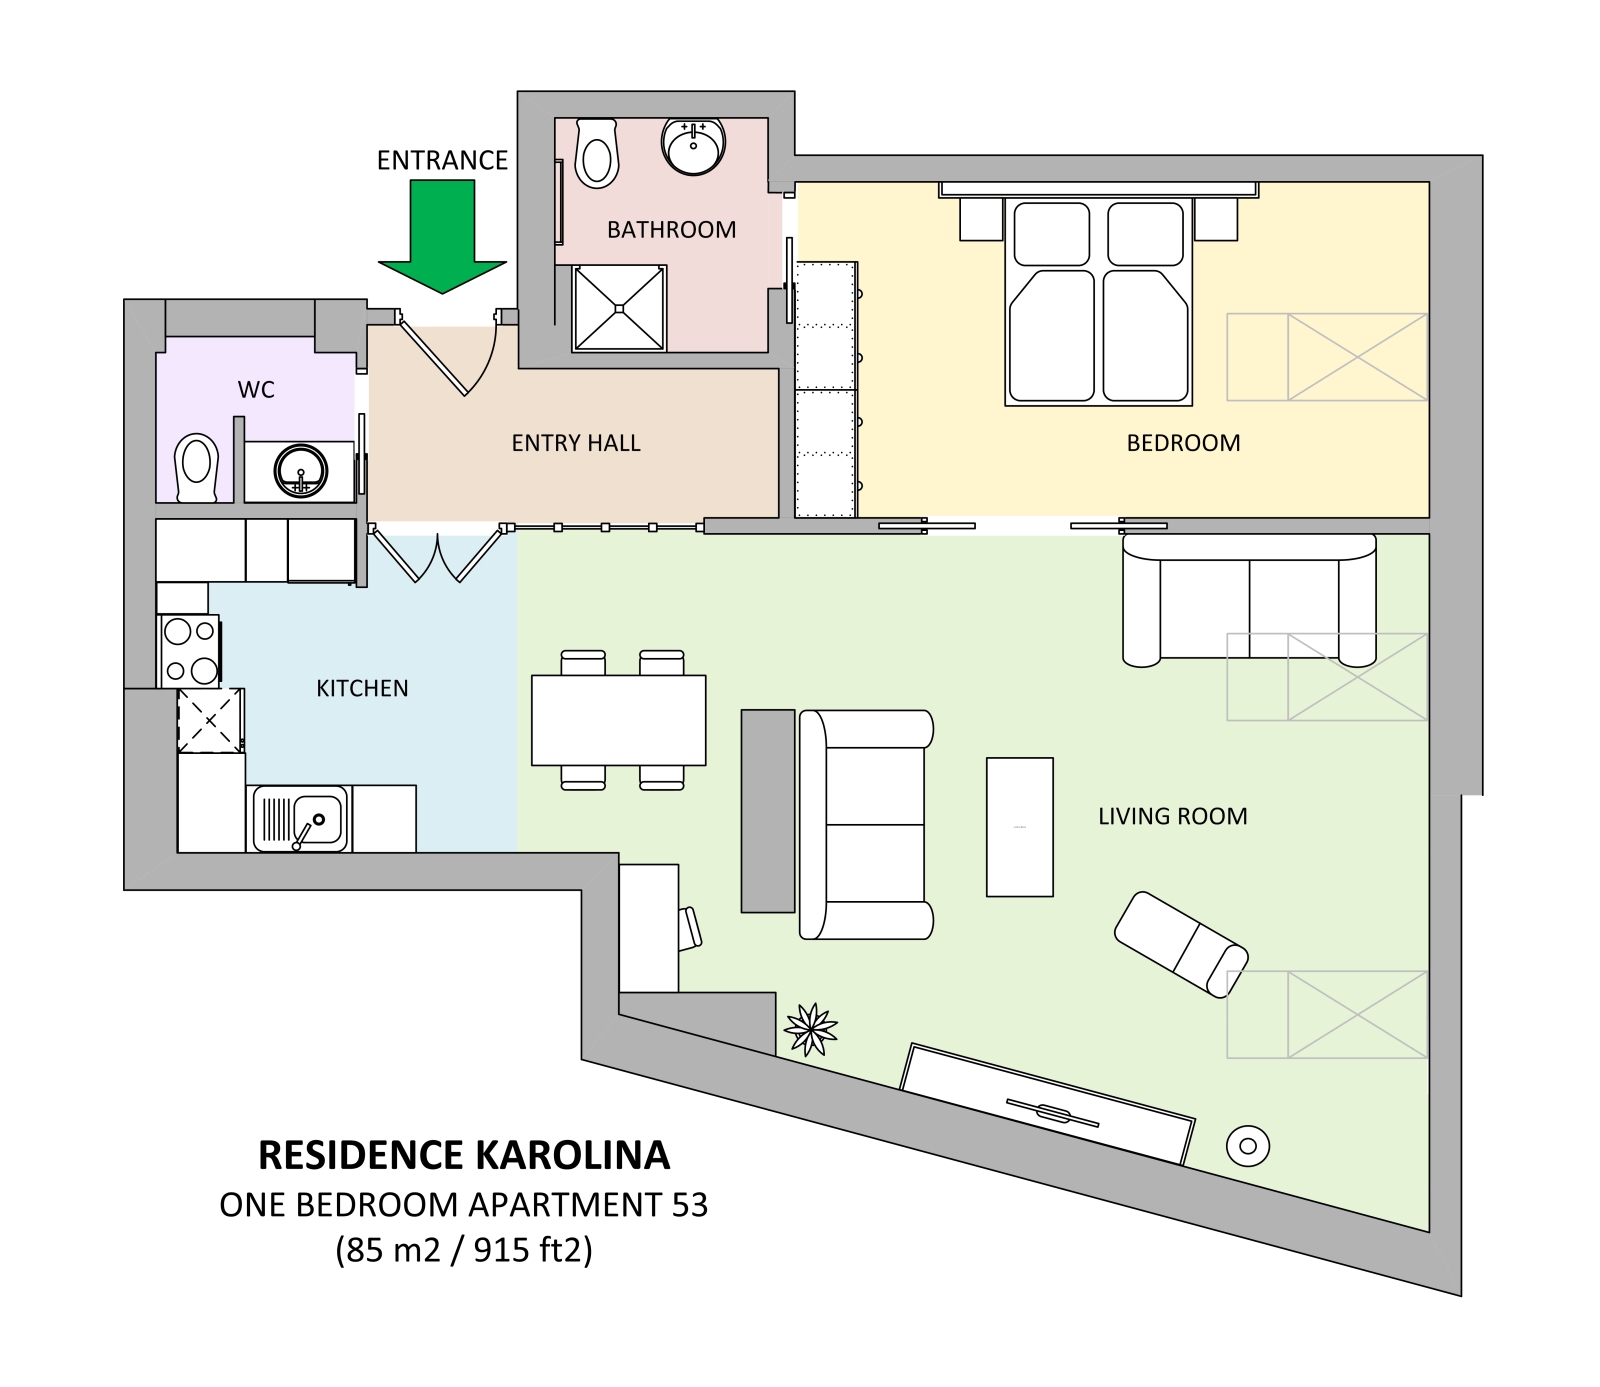 Floorplan of apartment 53 in Residence Karolina in Prague